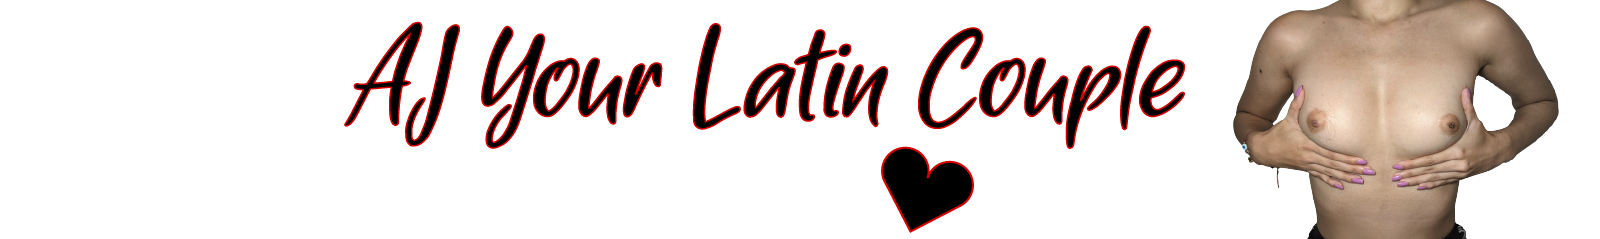 AJ your Latin couple